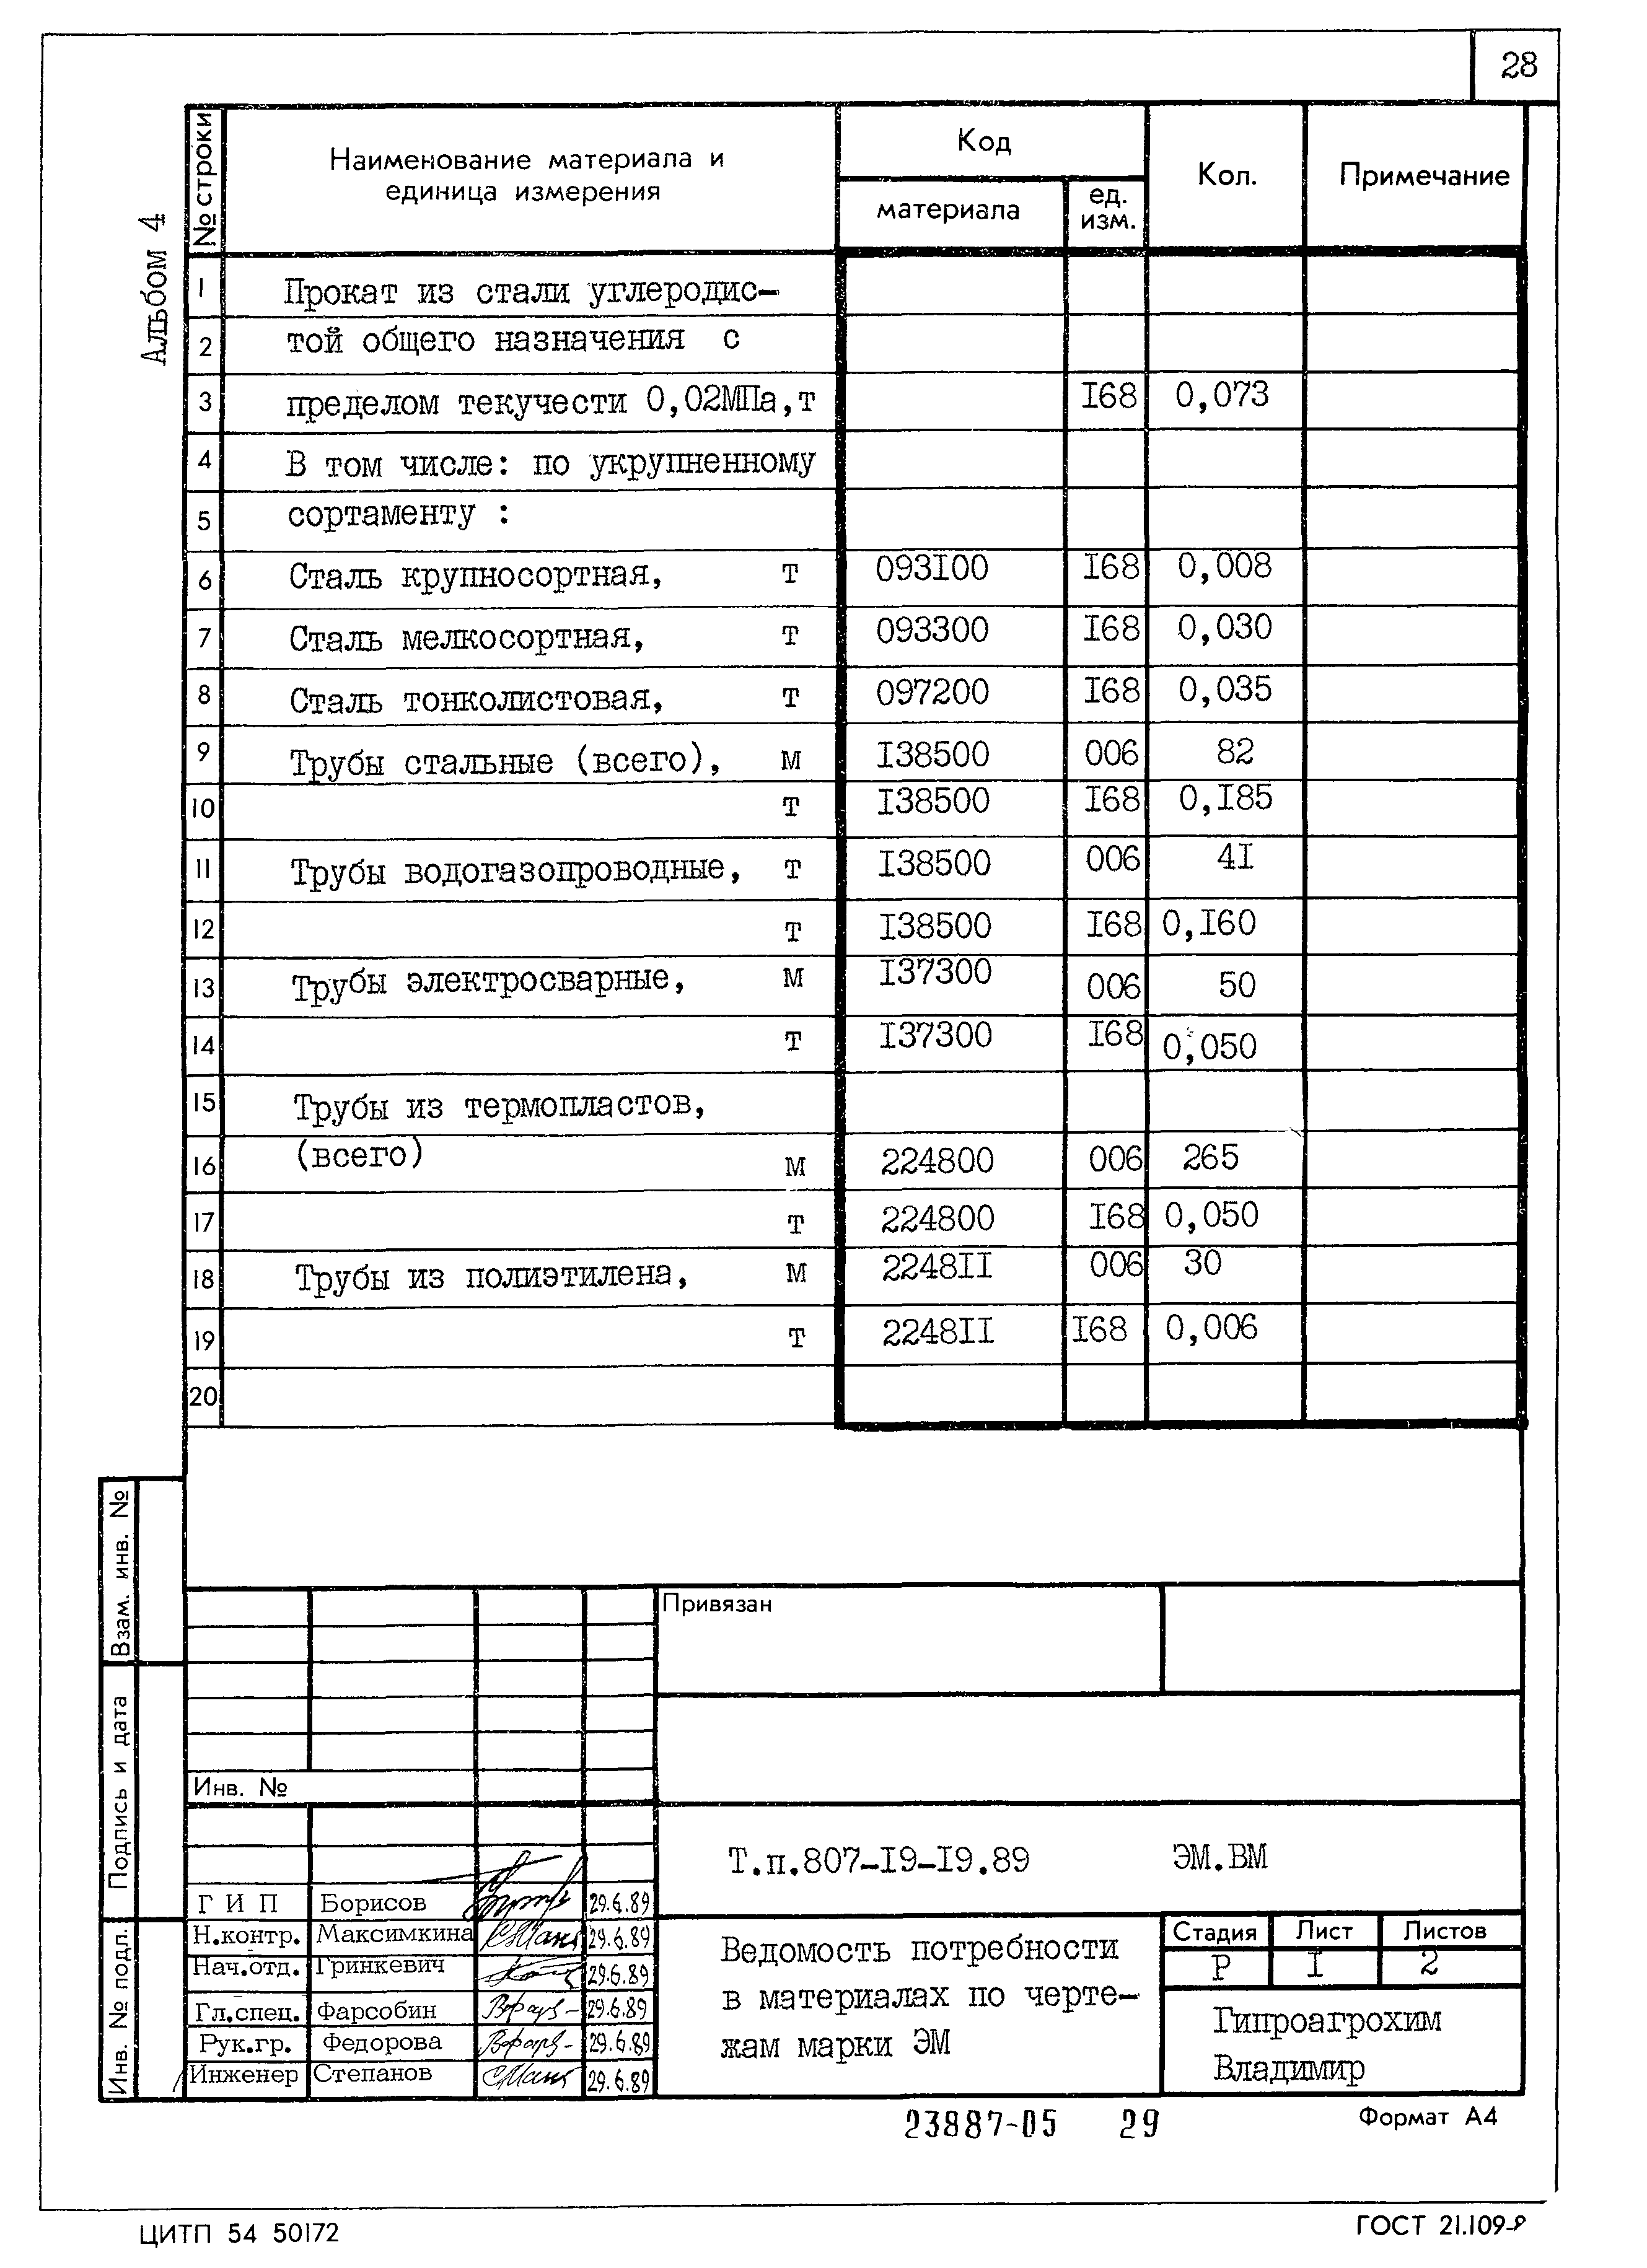 Типовой проект 807-19-19.89